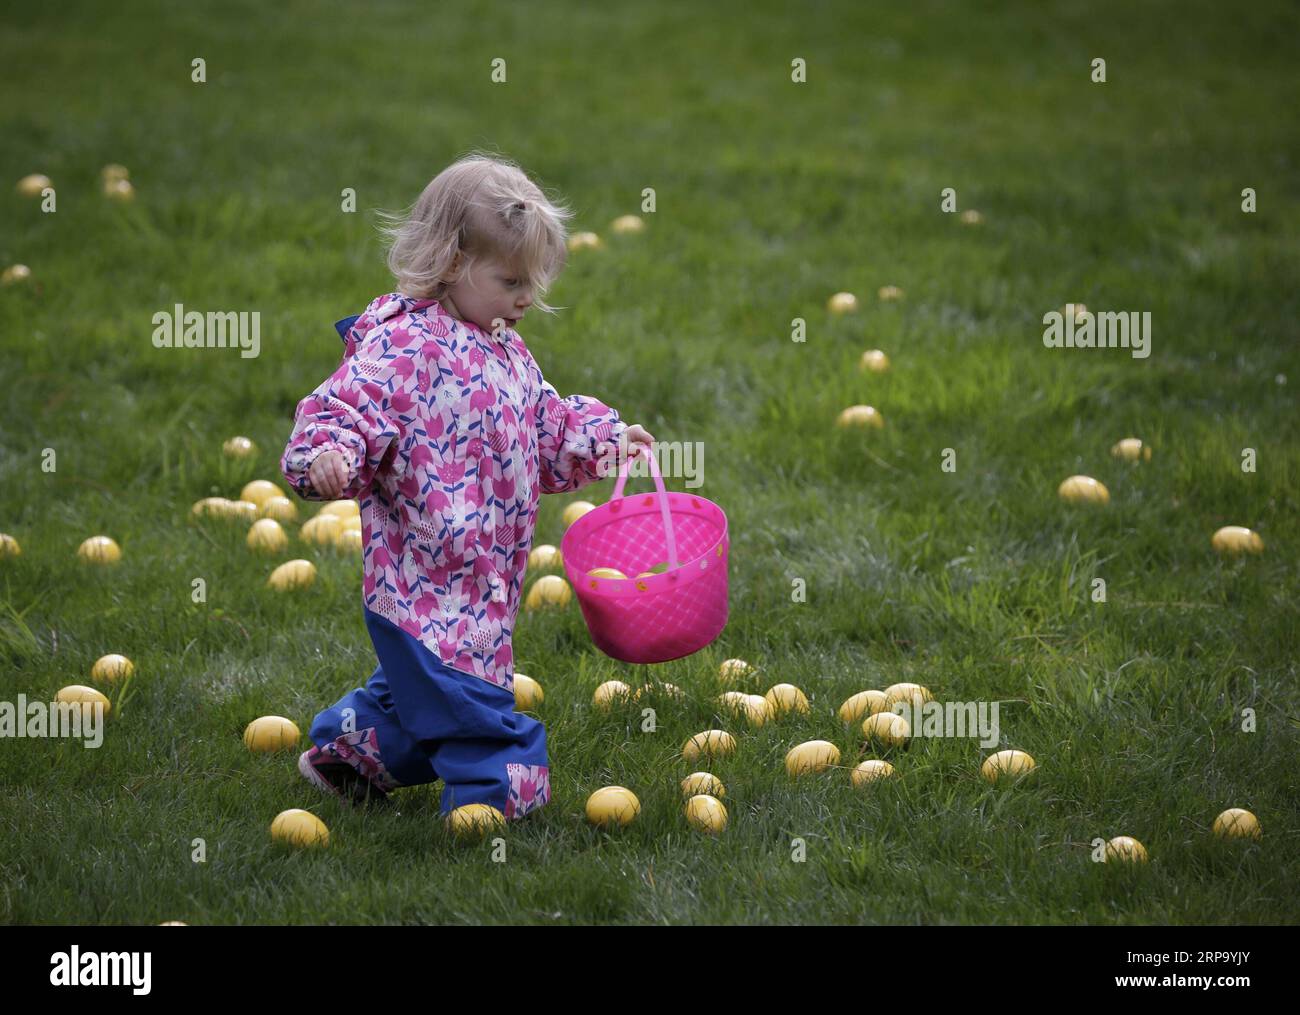 (190419) -- VANCOUVER, 19 aprile 2019 -- Un bambino va a caccia di uova durante l'Eggciting Easter Hop al VanDusen Botanical Garden di Vancouver, Canada, il 19 aprile 2019. La caccia all'uovo di Pasqua ha attirato qui le famiglie il venerdì, in cui i bambini potevano raccogliere uova vicino all'area labirinto e ricevere un premio di cioccolato, e saltare a musica divertente sul prato. ) CANADA-VANCOUVER-EASTER-EGG HUNT LiangxSen PUBLICATIONxNOTxINxCHN Foto Stock